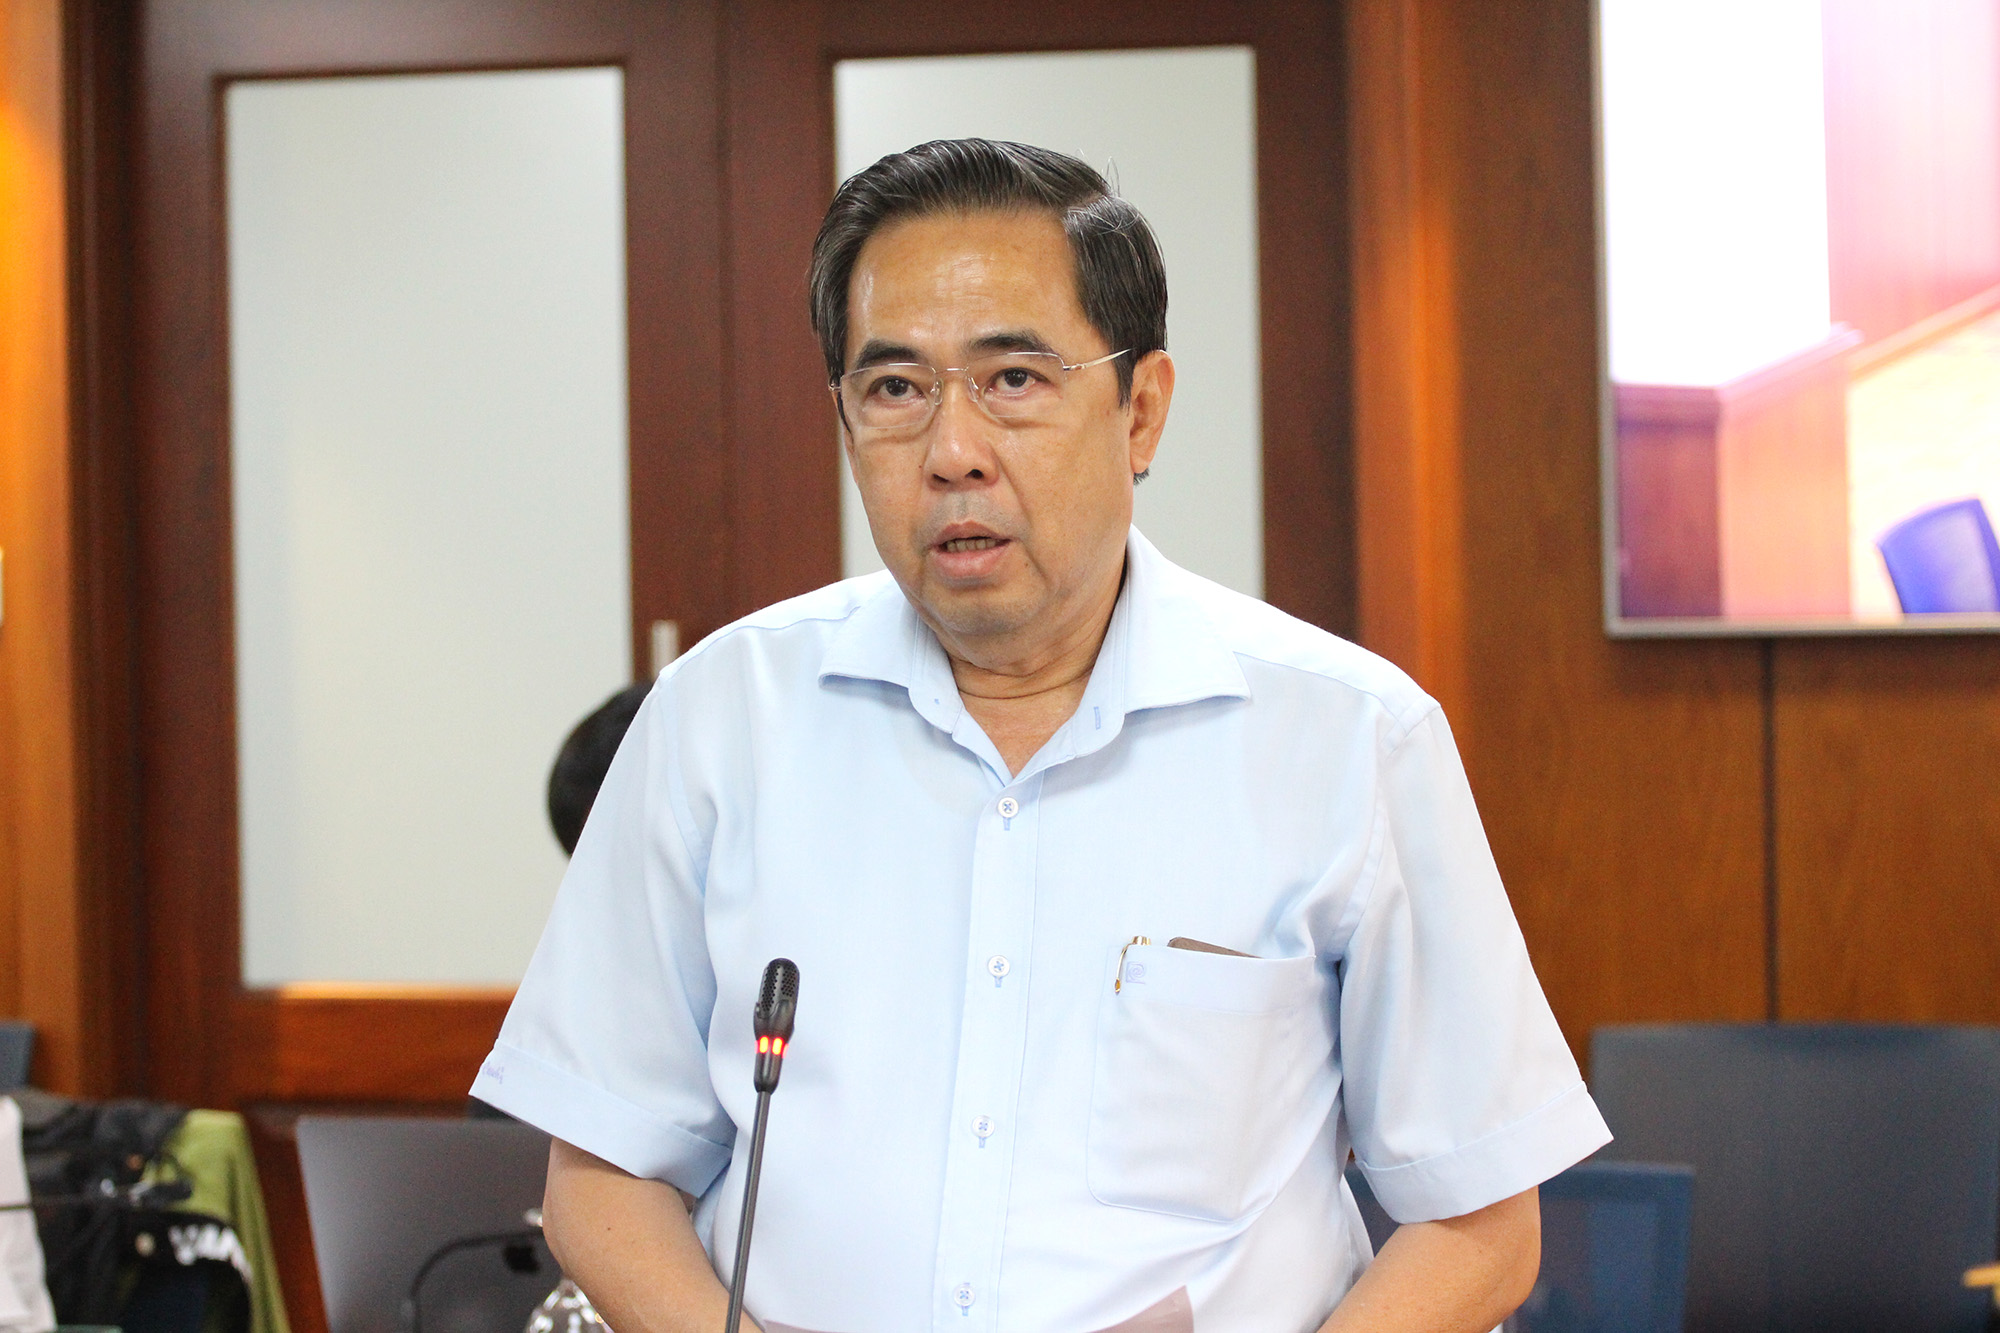 Đồng chí Nguyễn Văn Lâm, Phó Giám đốc Sở LĐTB&XH TP. Hồ Chí Minh cho thông tin tại buổi họp báo.